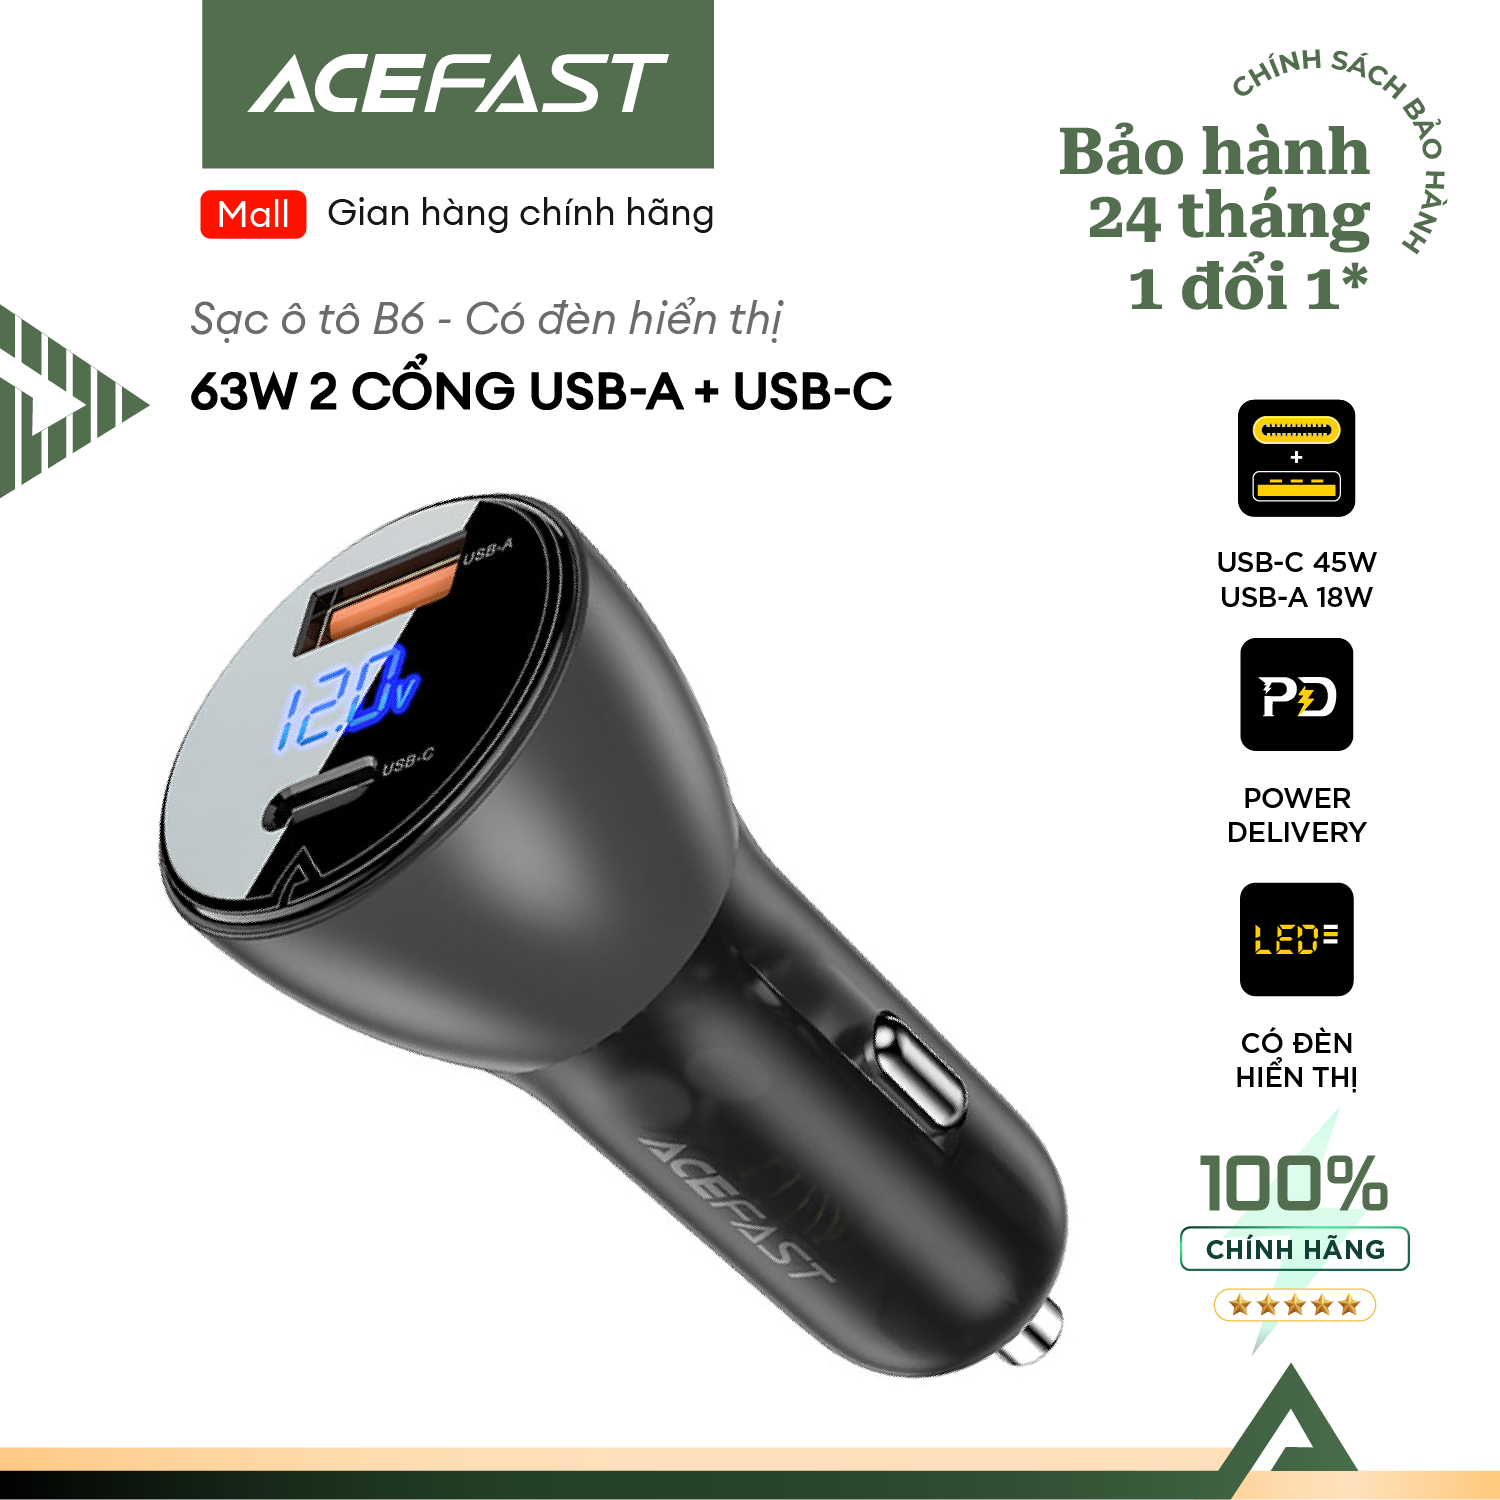 Sạc ô tô Acefast 63W 2 cổng USB-A + USB-C có đèn hiển thị - B6 Hàng chính hãng Acefast